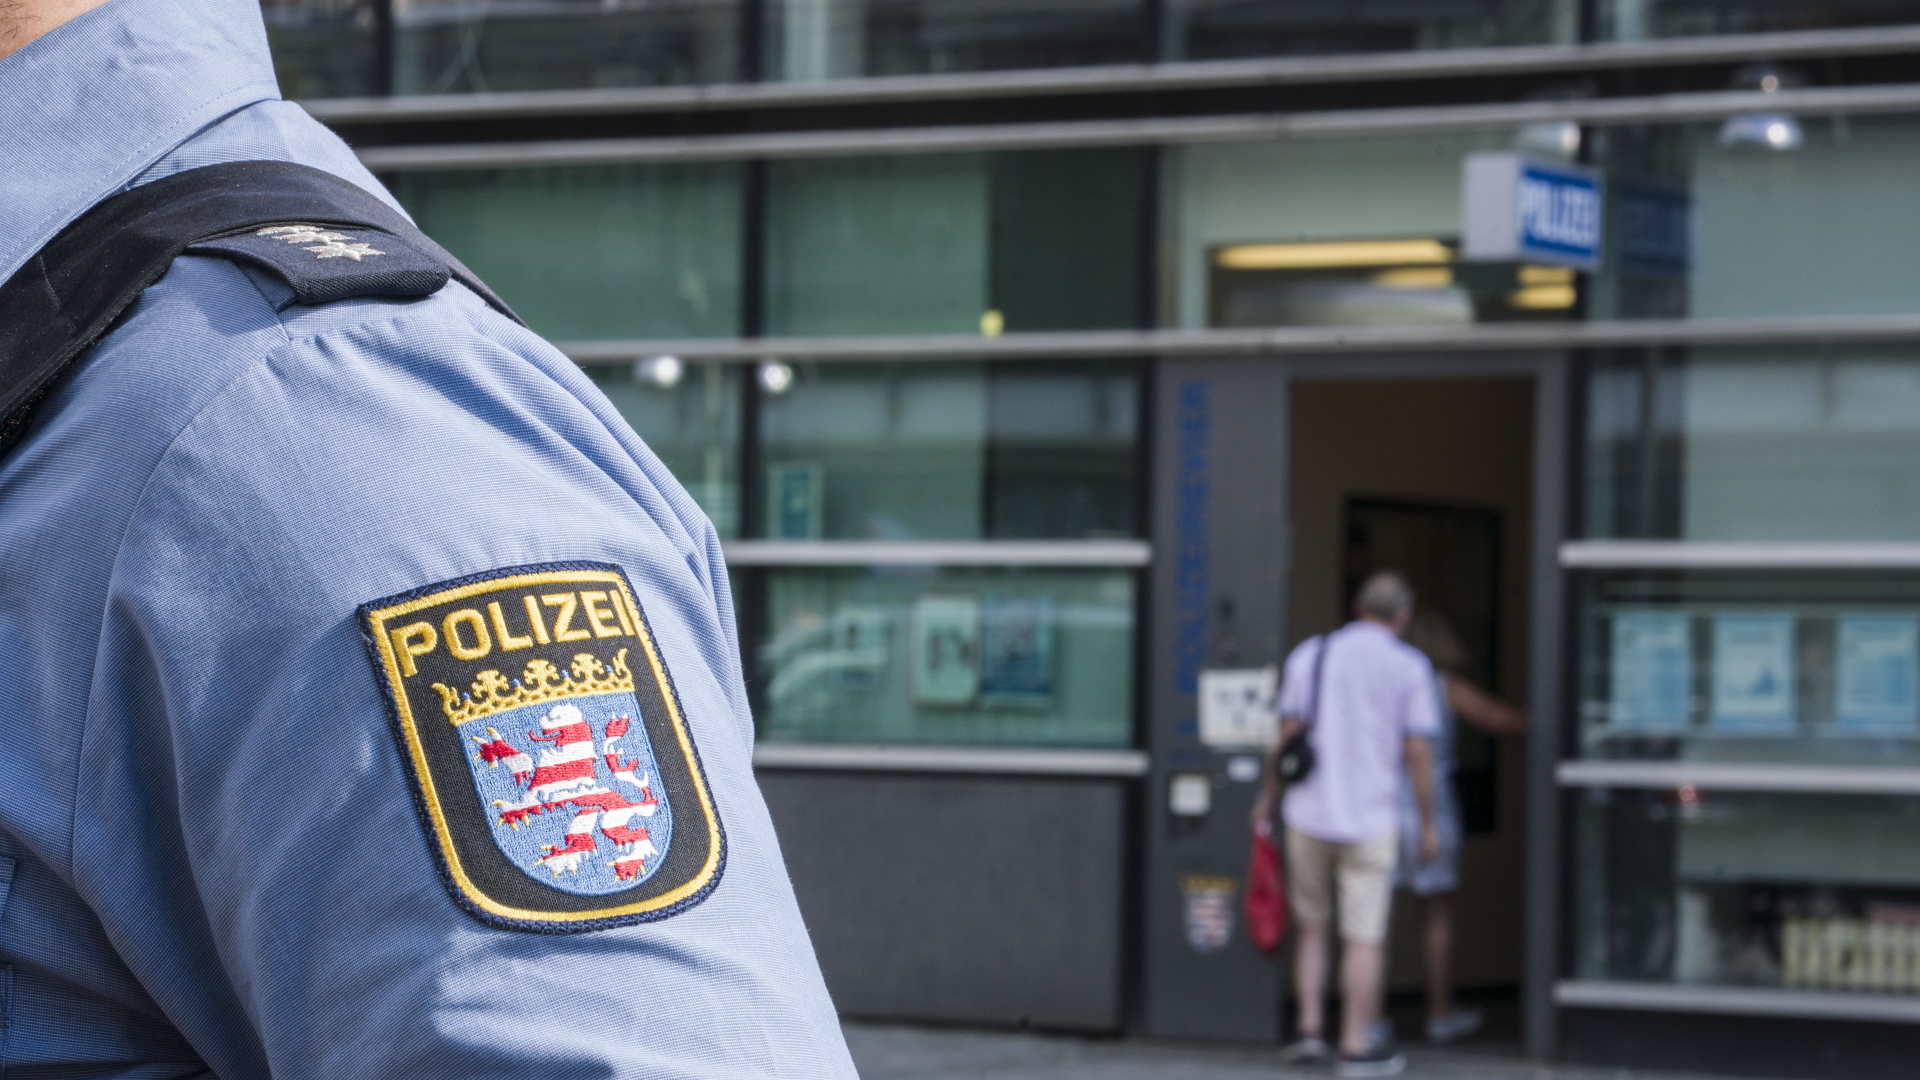 Wappen auf dem Ärmel eines Polizisten in Hessen | dpa